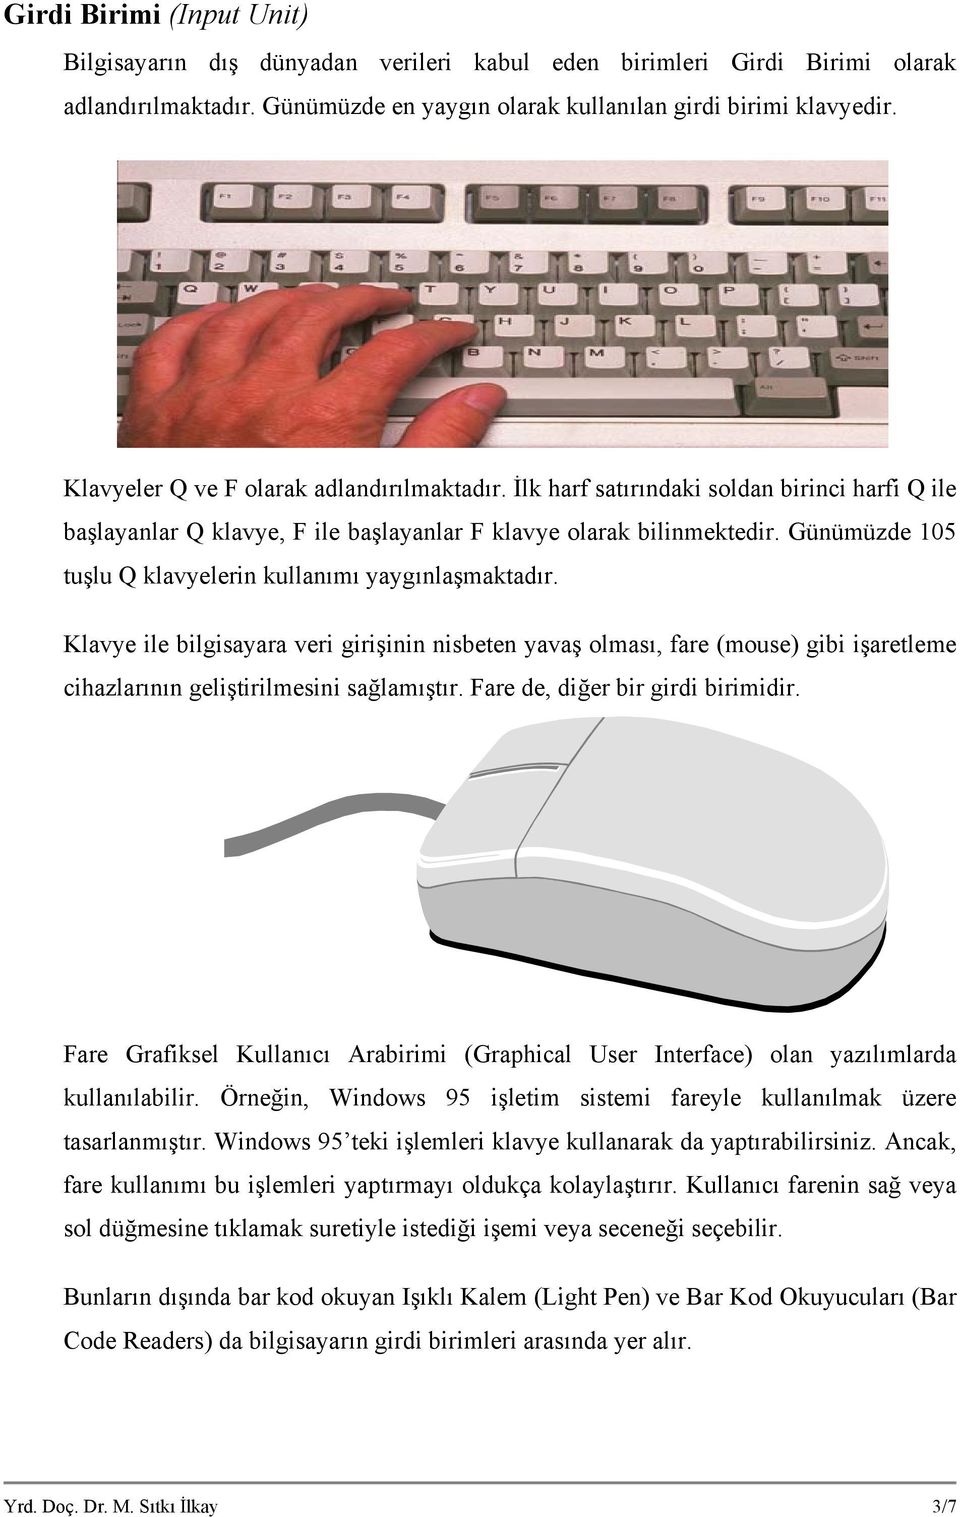 Günümüzde 105 tuşlu Q klavyelerin kullanımı yaygınlaşmaktadır. Klavye ile bilgisayara veri girişinin nisbeten yavaş olması, fare (mouse) gibi işaretleme cihazlarının geliştirilmesini sağlamıştır.